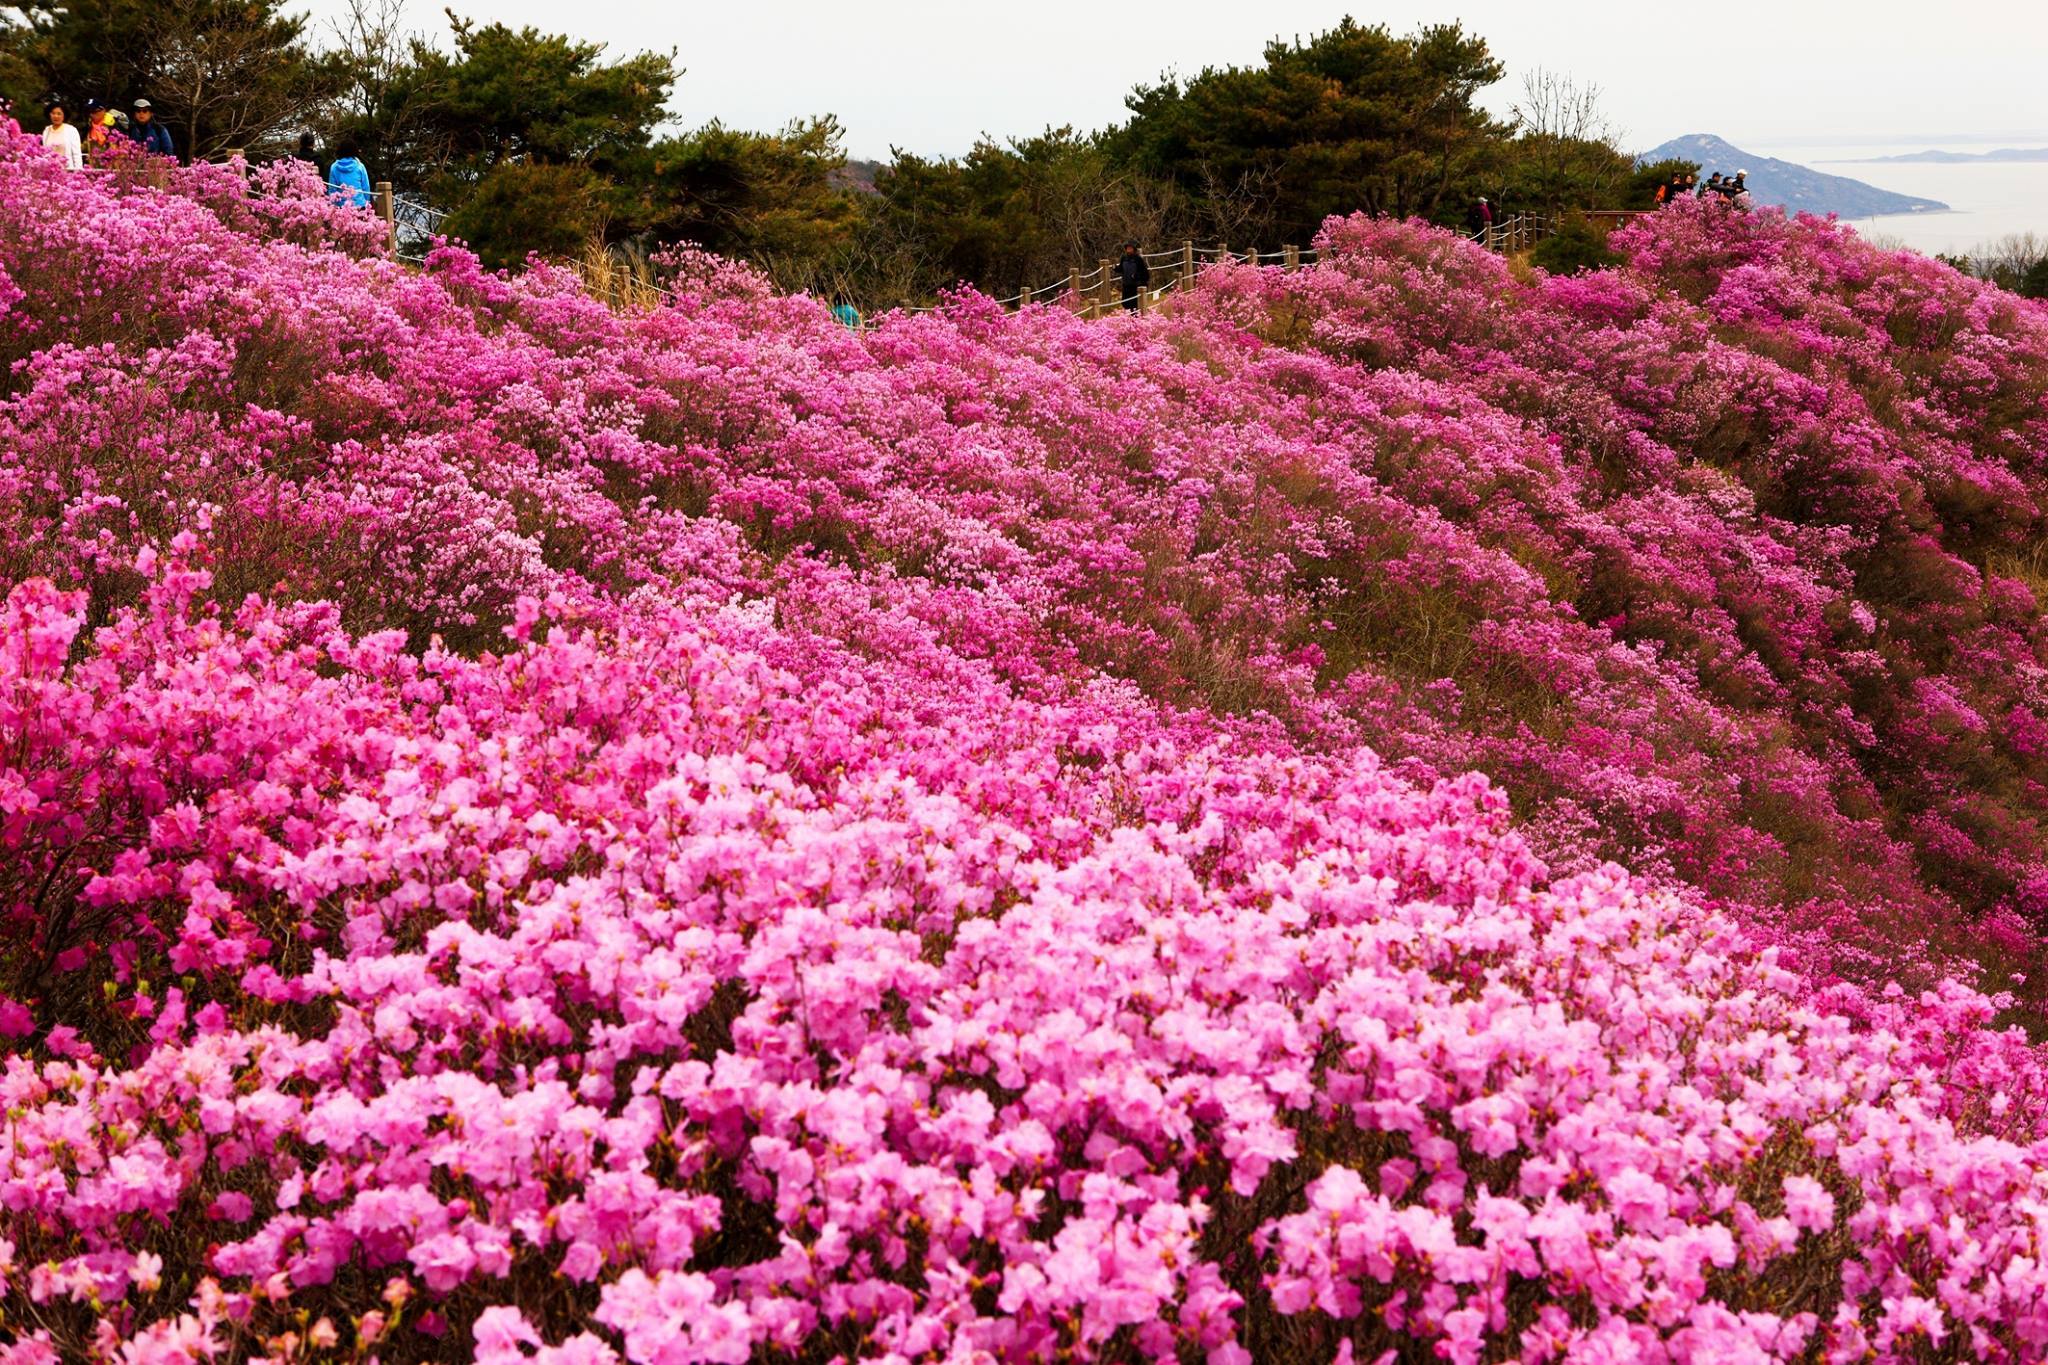 Thảm hoa đỗ quyên trên đỉnh núi Nhật Bản  VnExpress Du lịch